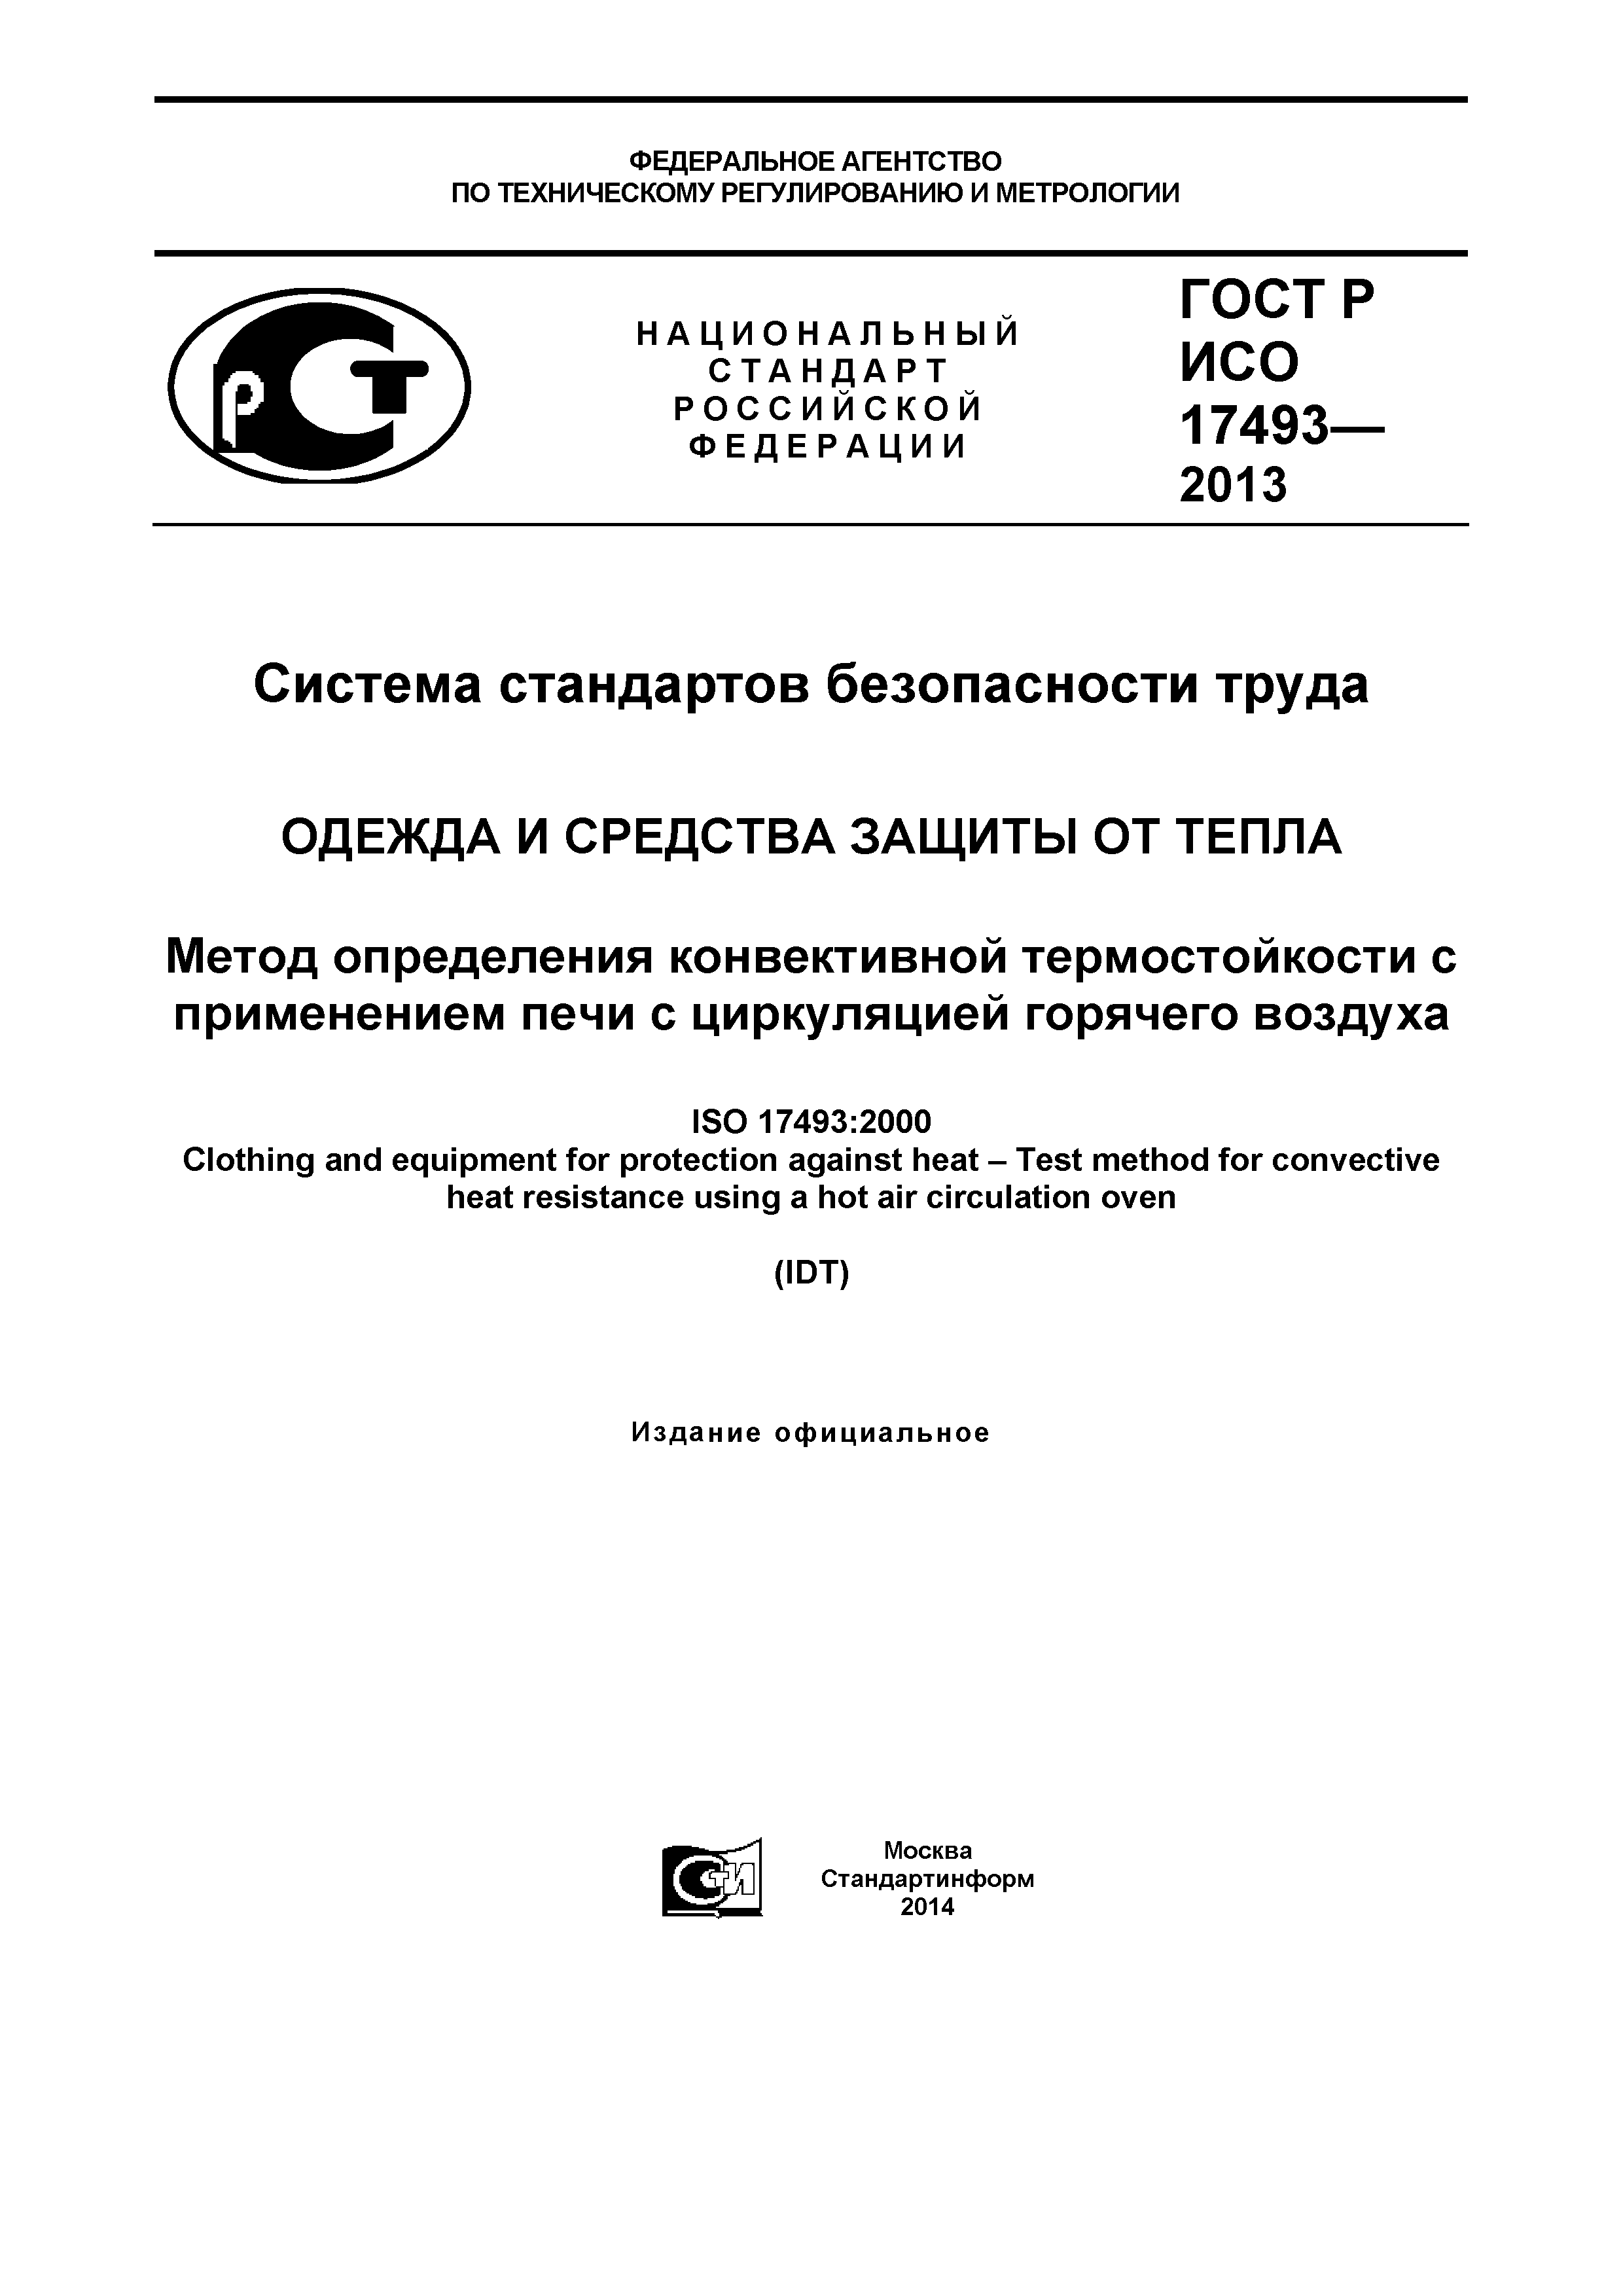 ГОСТ Р ИСО 17493-2013